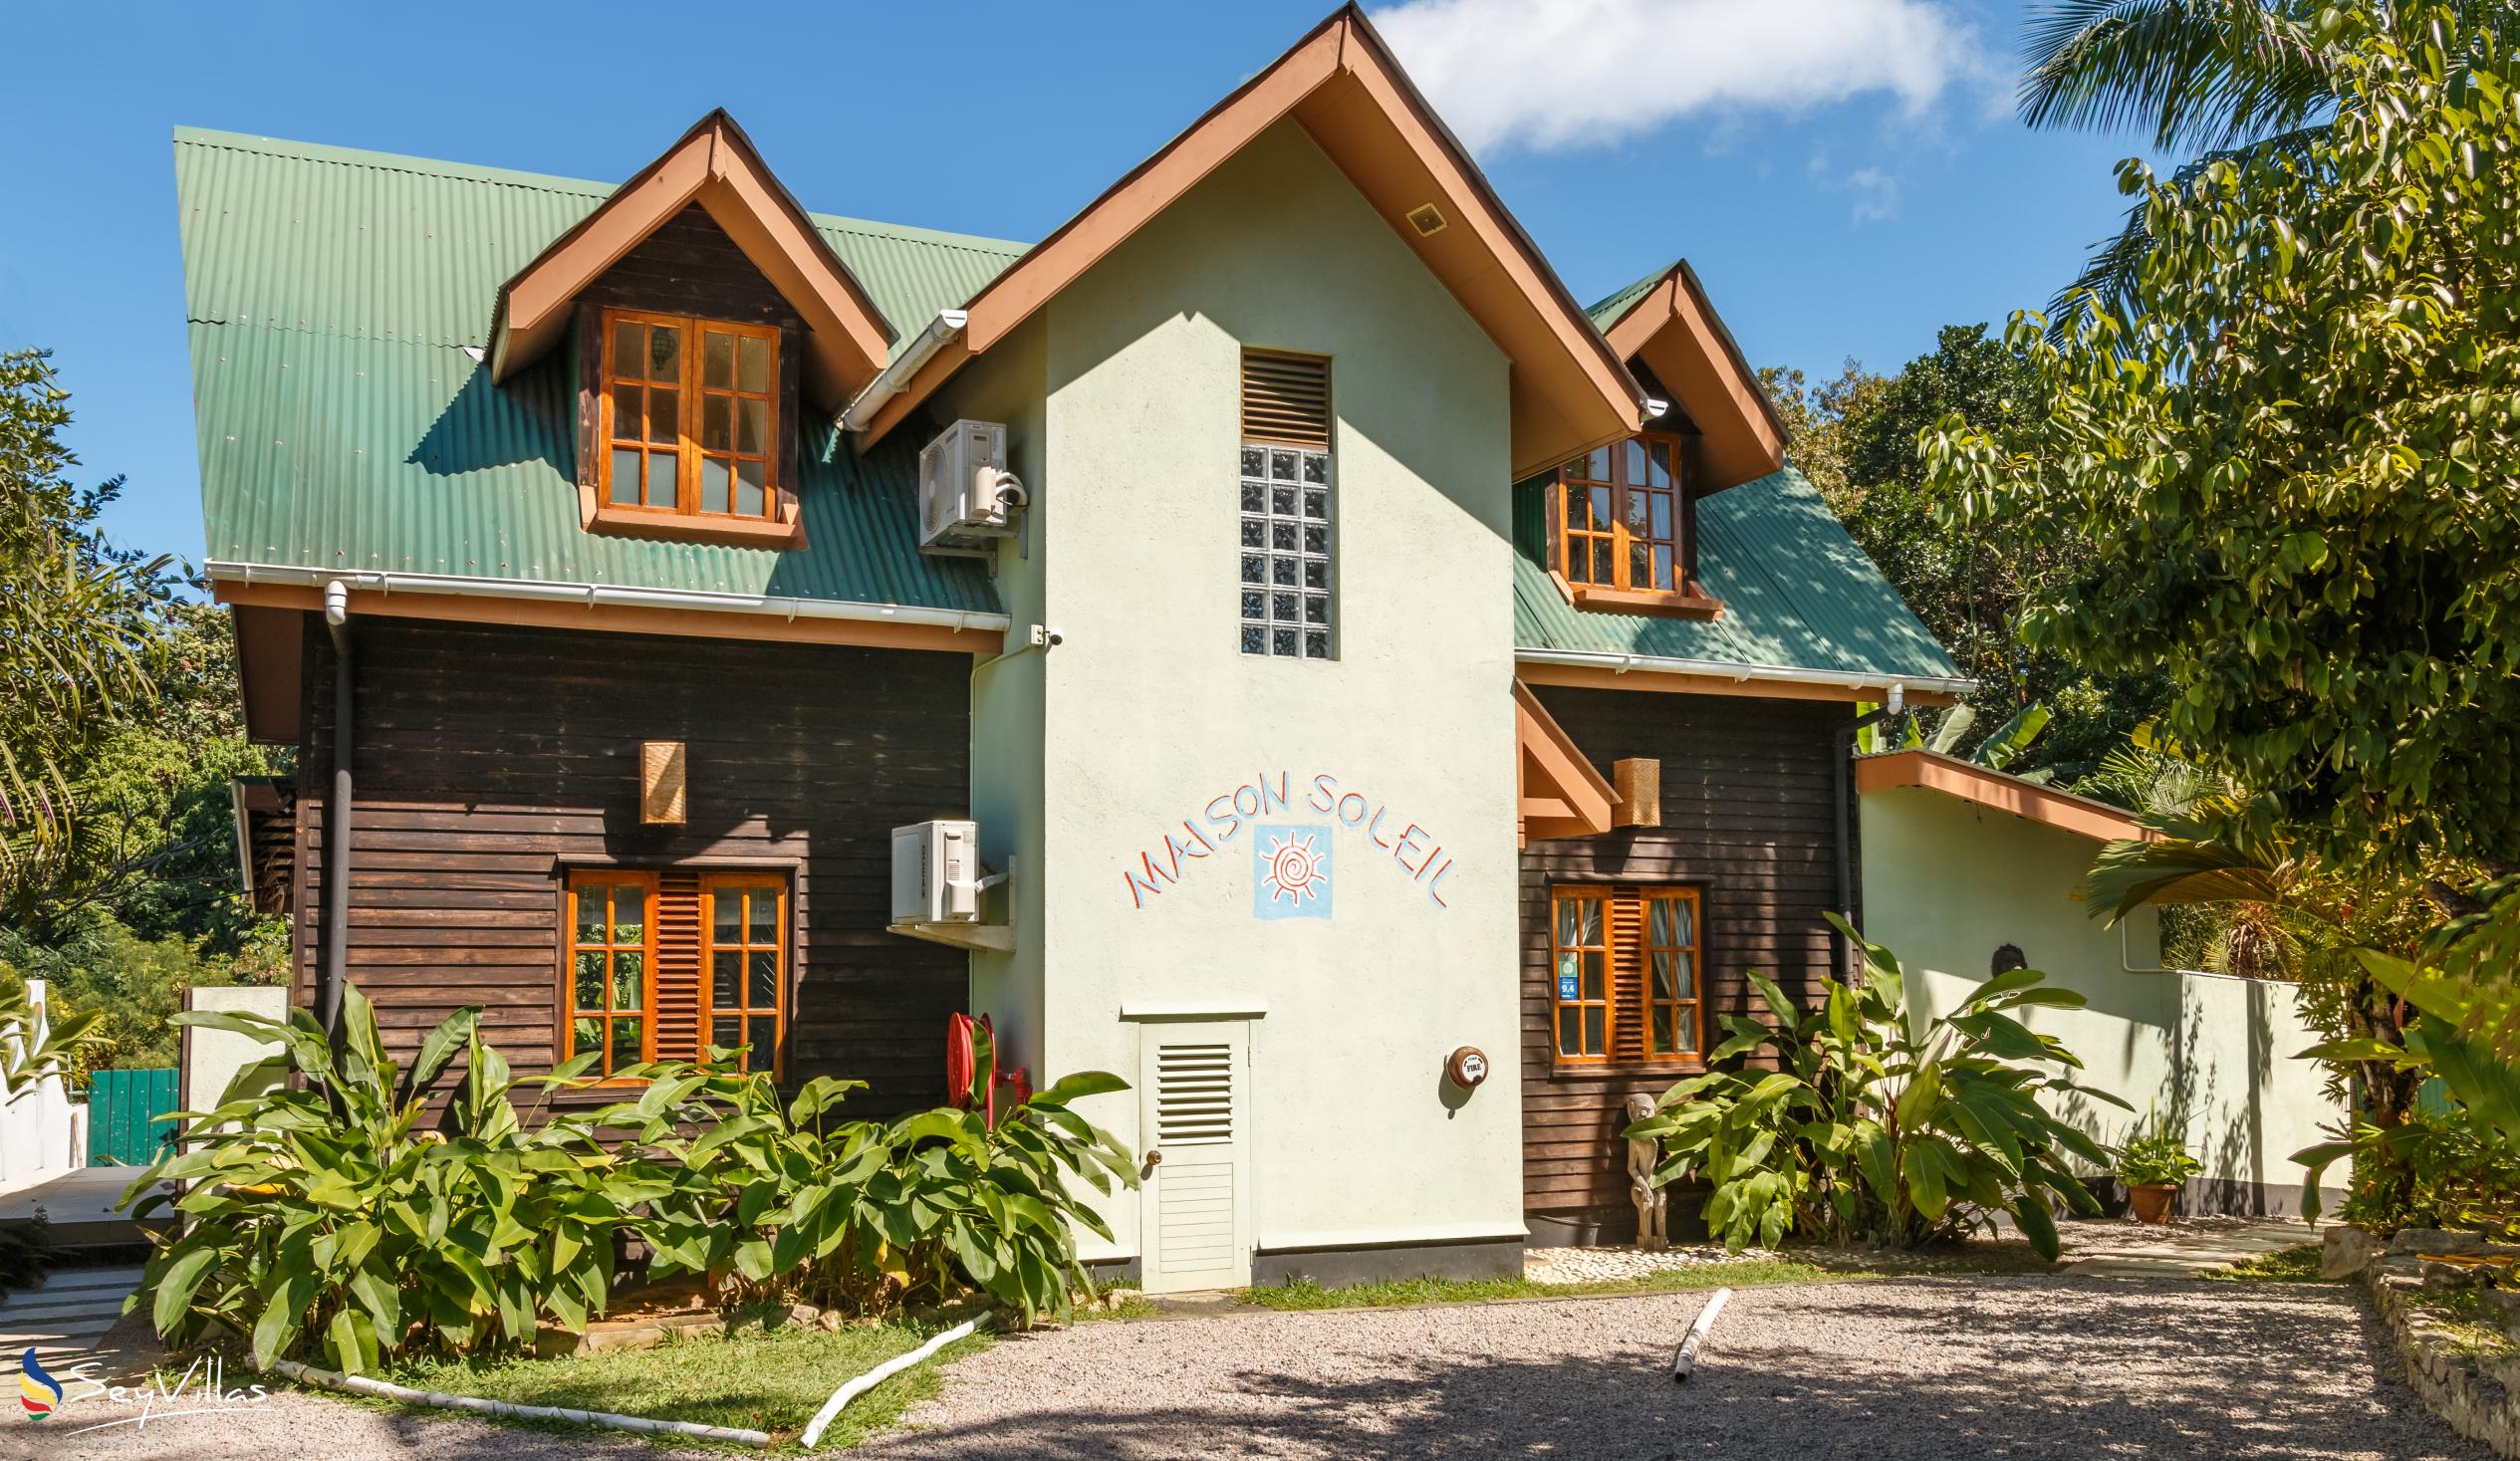 Foto 1: Maison Soleil - Esterno - Mahé (Seychelles)